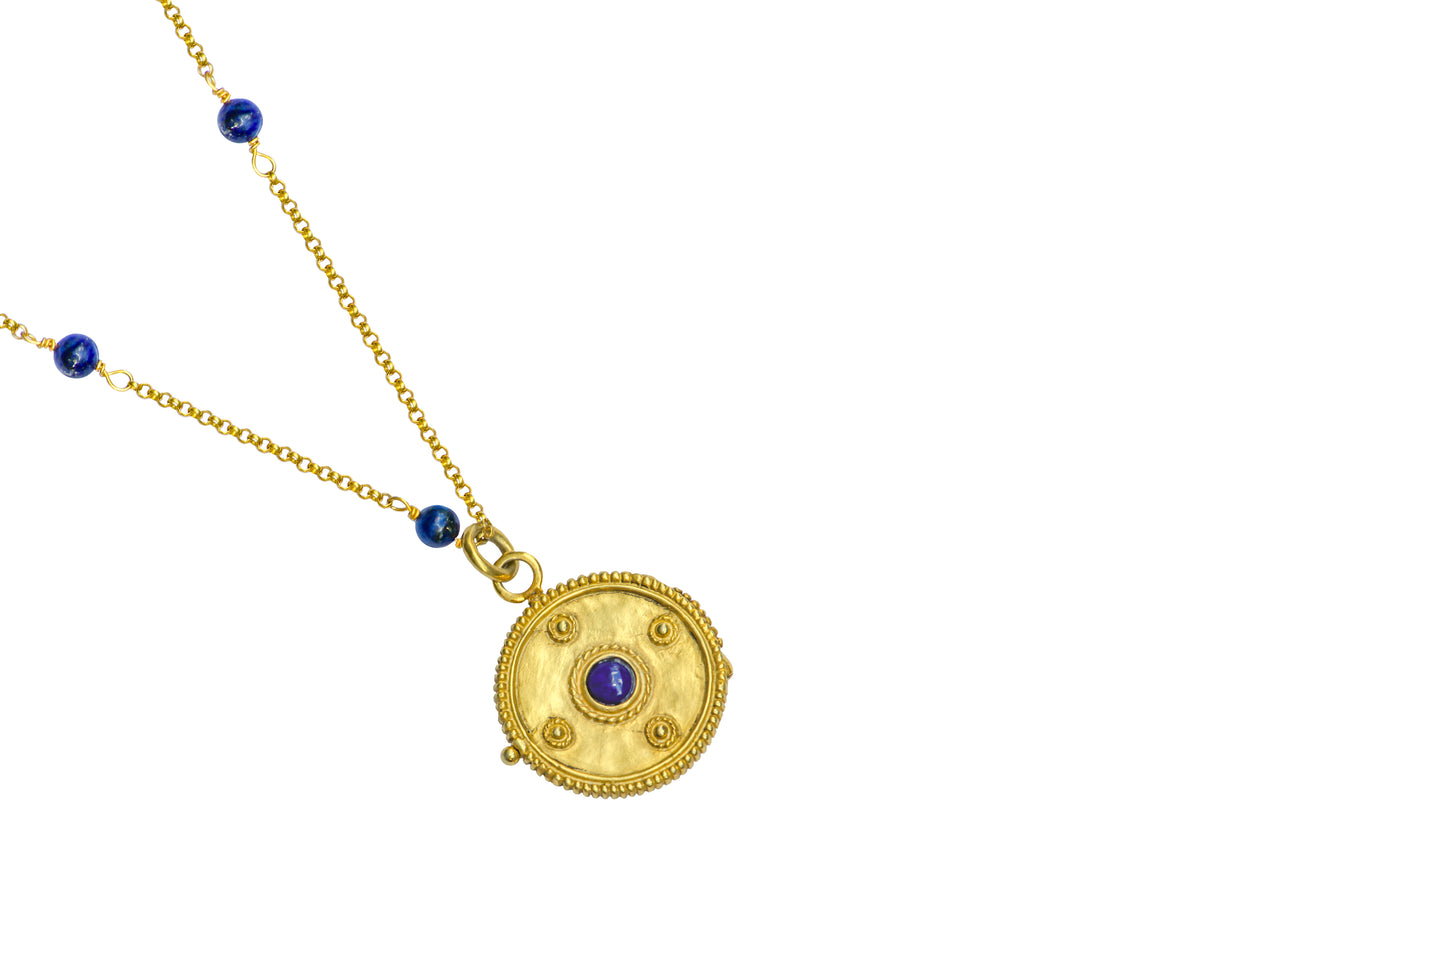 gold Medallion necklace details